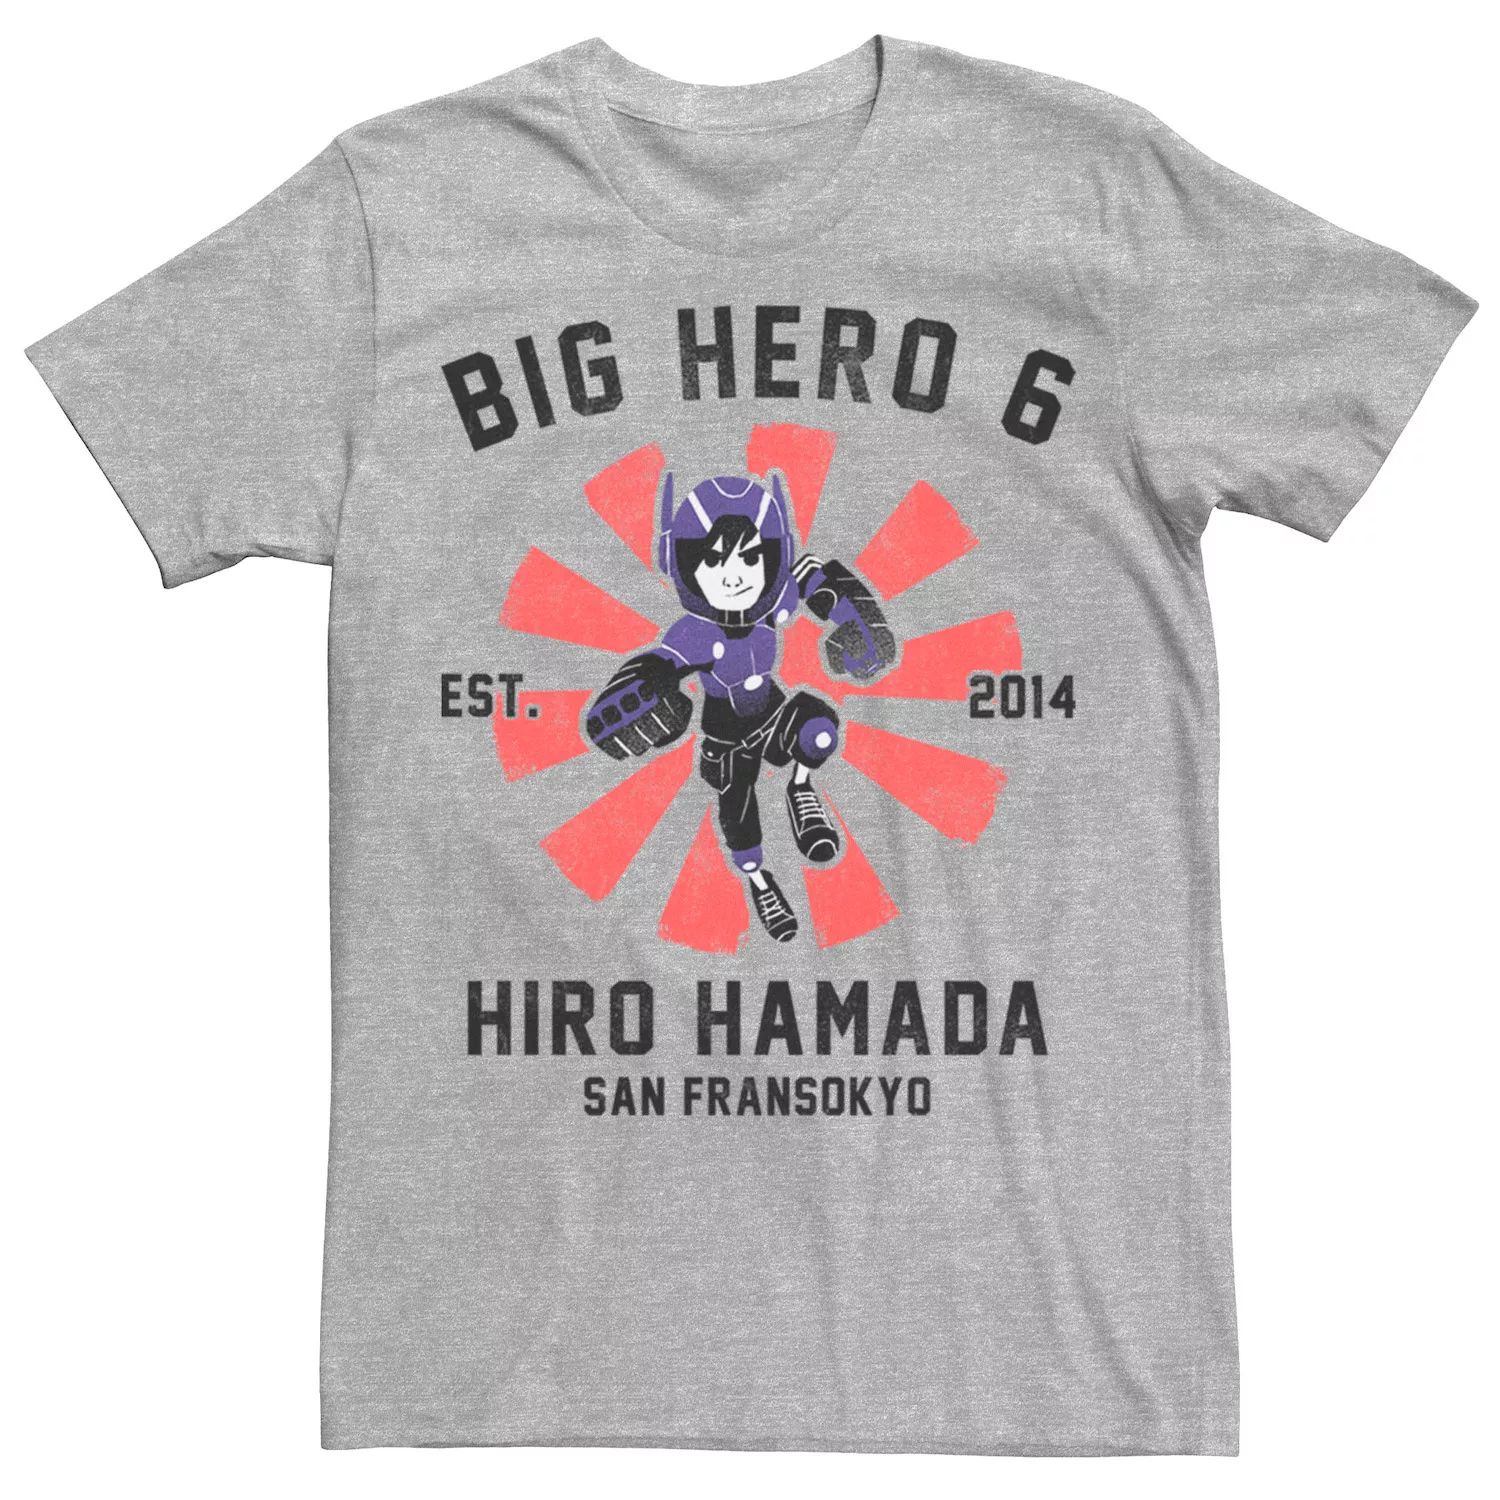 Мужская футболка с плакатом Big Hero 6 Hiro Hamada Disney